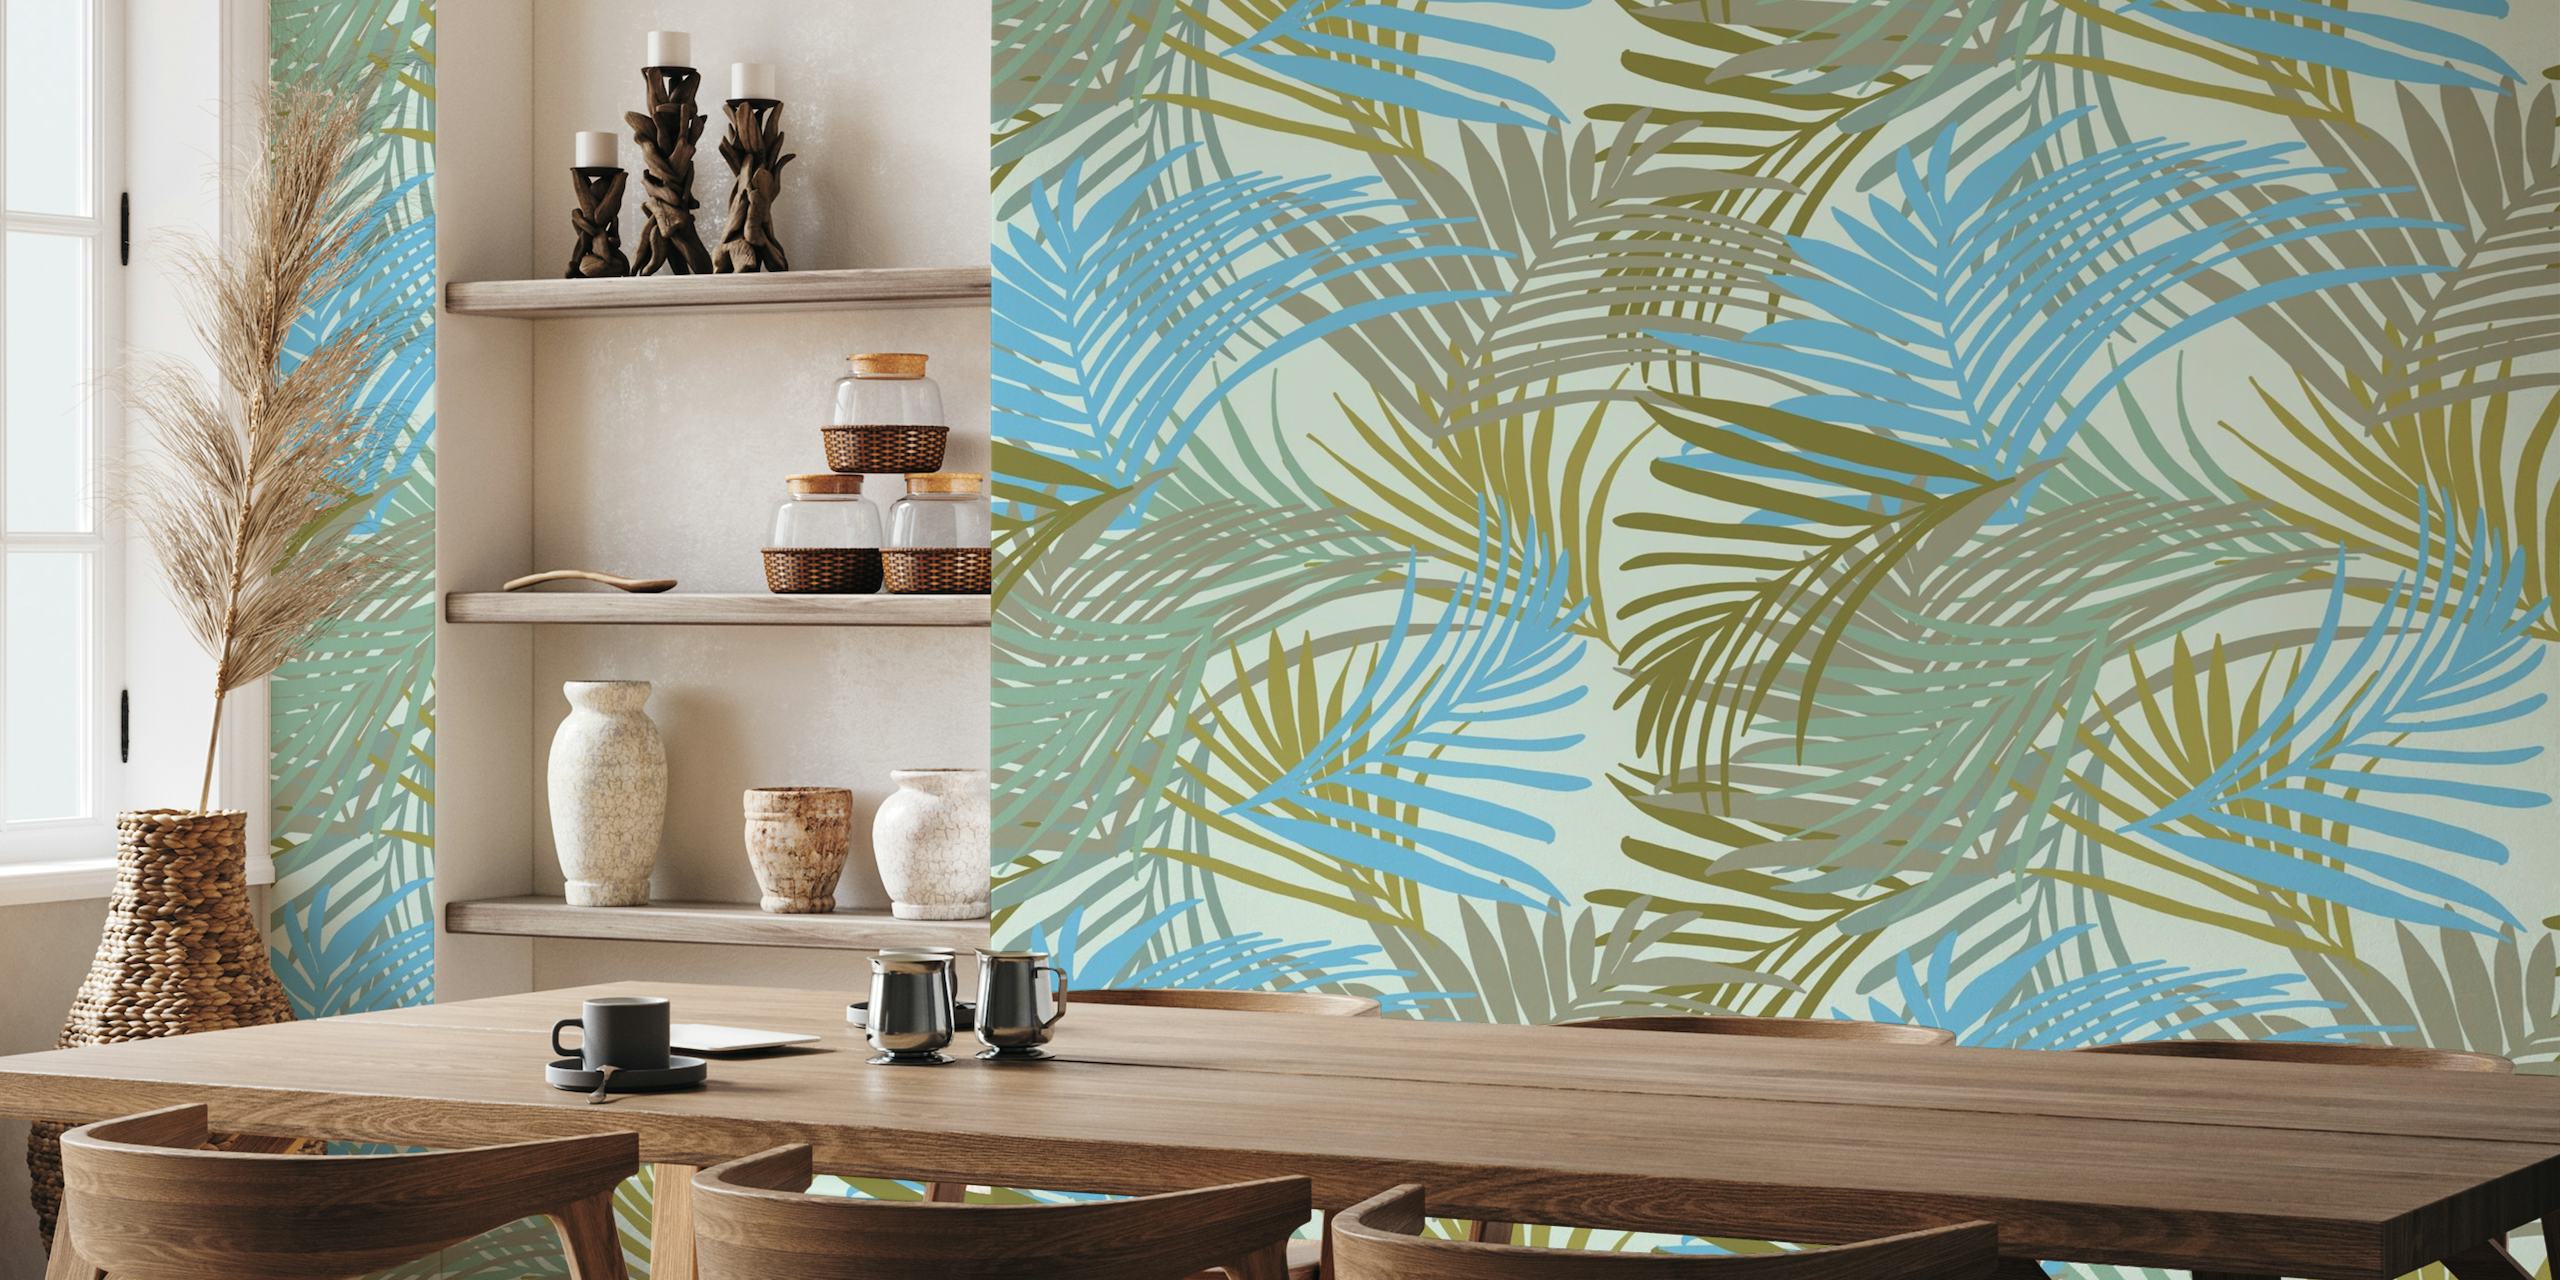 Wandbild mit tropischem Palmenblattmuster in Blau-, Grün- und Khakitönen.